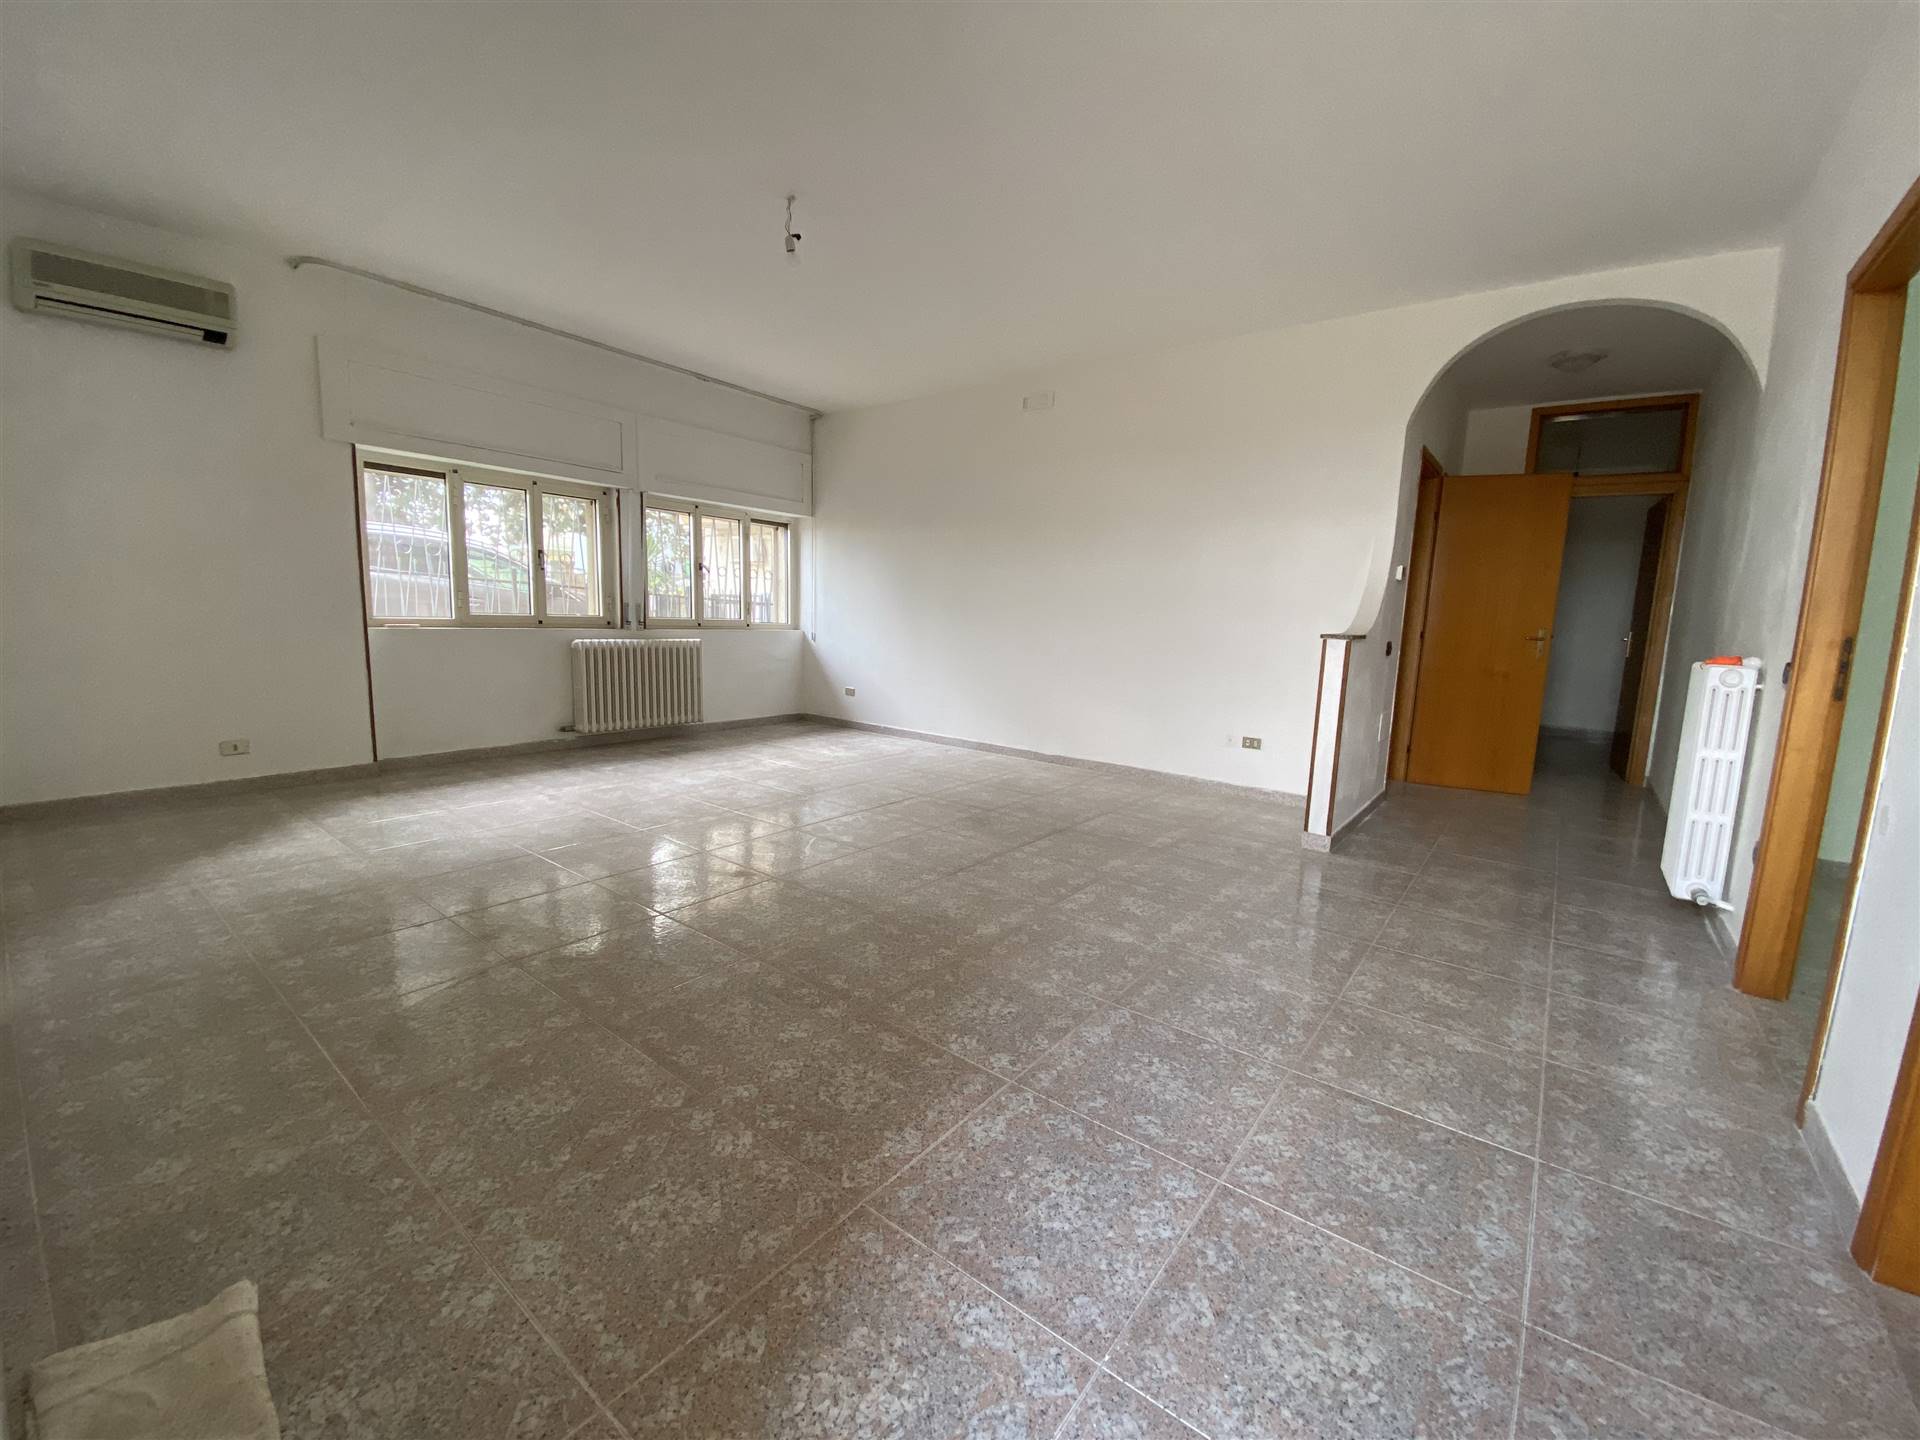 Appartamento in vendita a Policoro, 5 locali, prezzo € 115.000 | CambioCasa.it